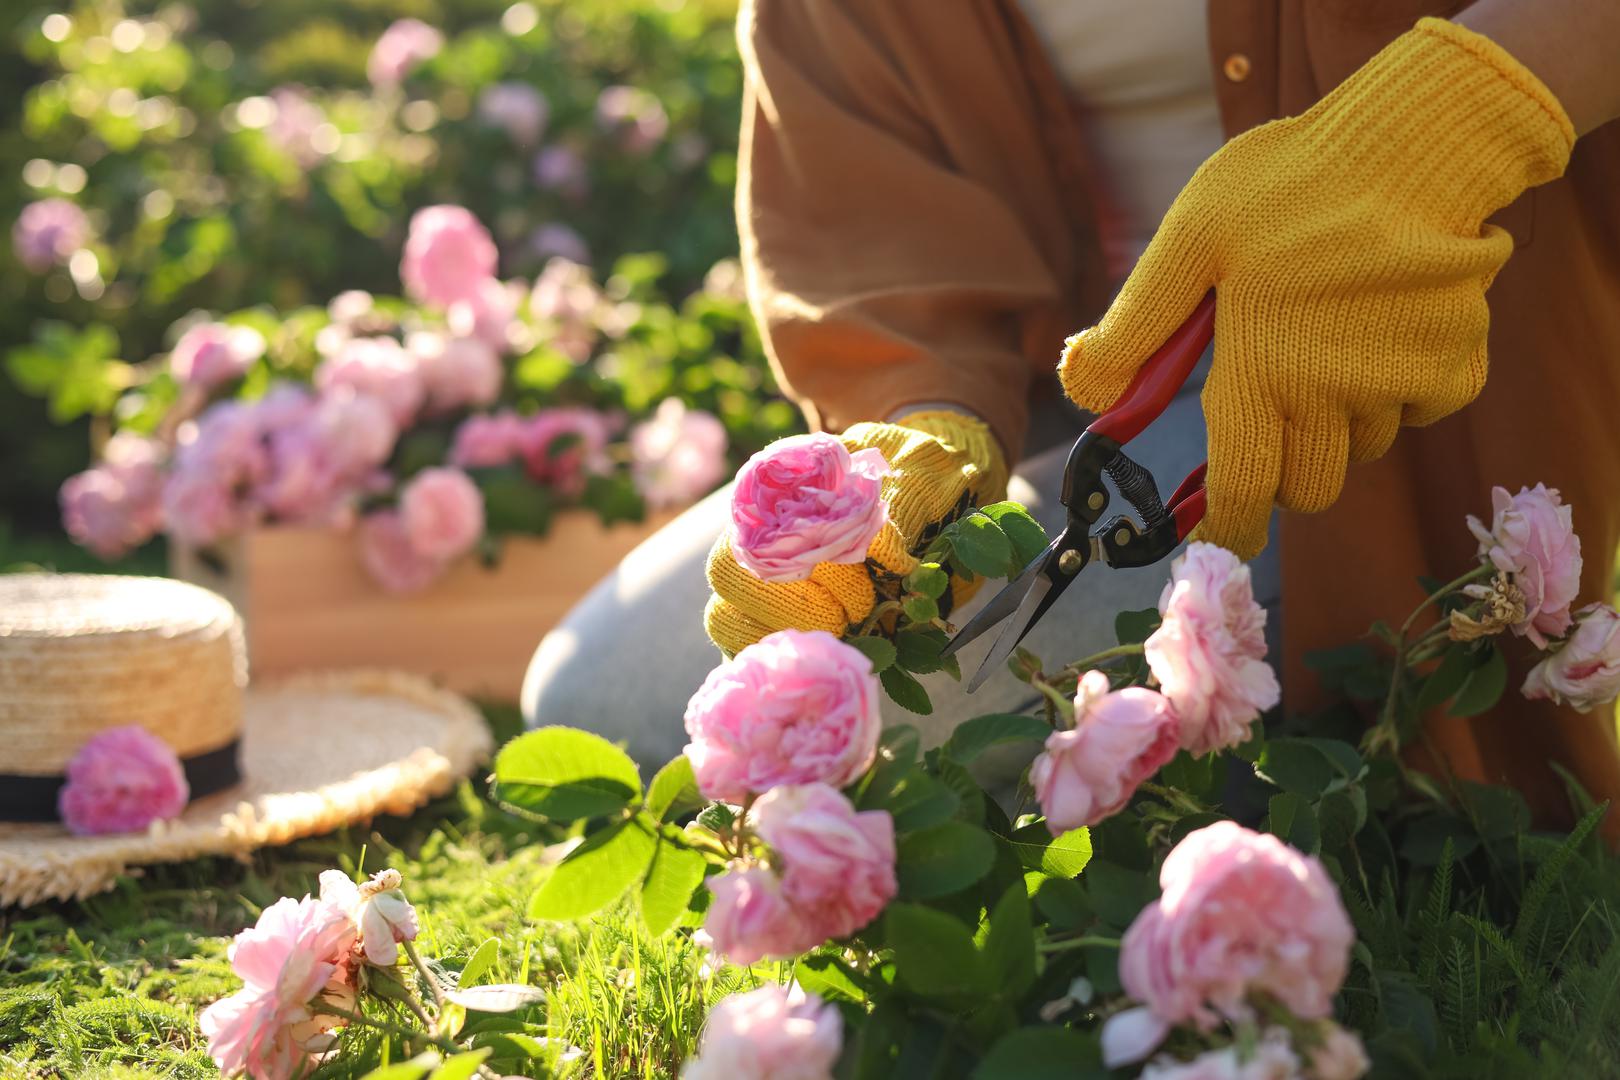 Vaga (23. rujna – 23. listopada) - Ruže: Ruže, simbol ljubavi i ljepote, savršeno odražavaju estetiku i harmoniju koju Vage cijene. Ovi cvjetovi dodaju eleganciju i romantiku u vrt te stvaraju atmosferu koja odgovara Vaginom ukusu.